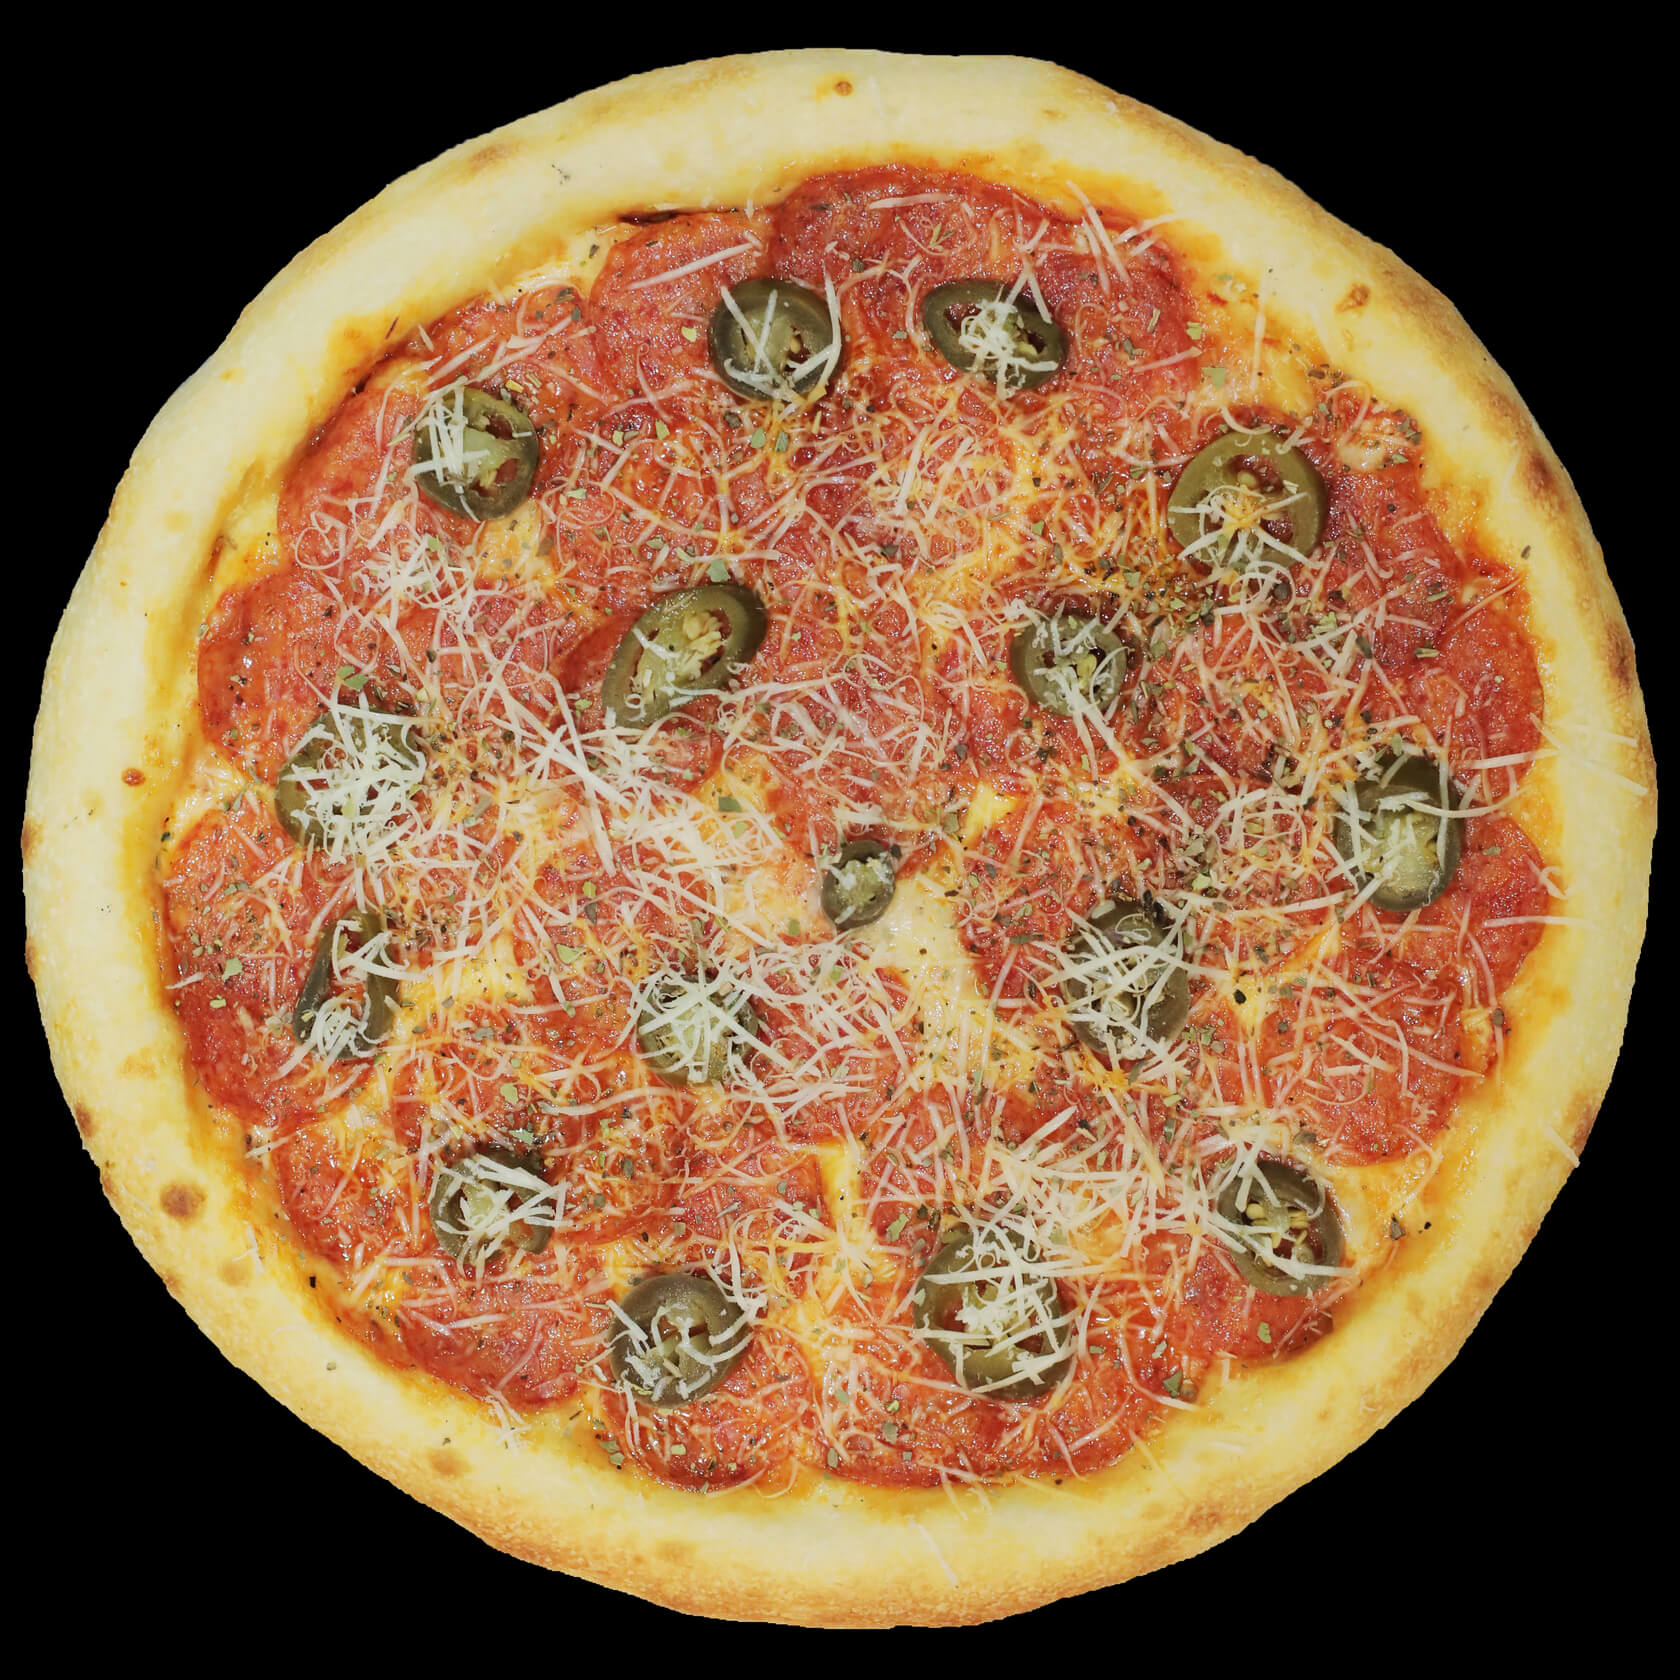 я хочу пиццу с перцем луком пепперони и оливками фото 25